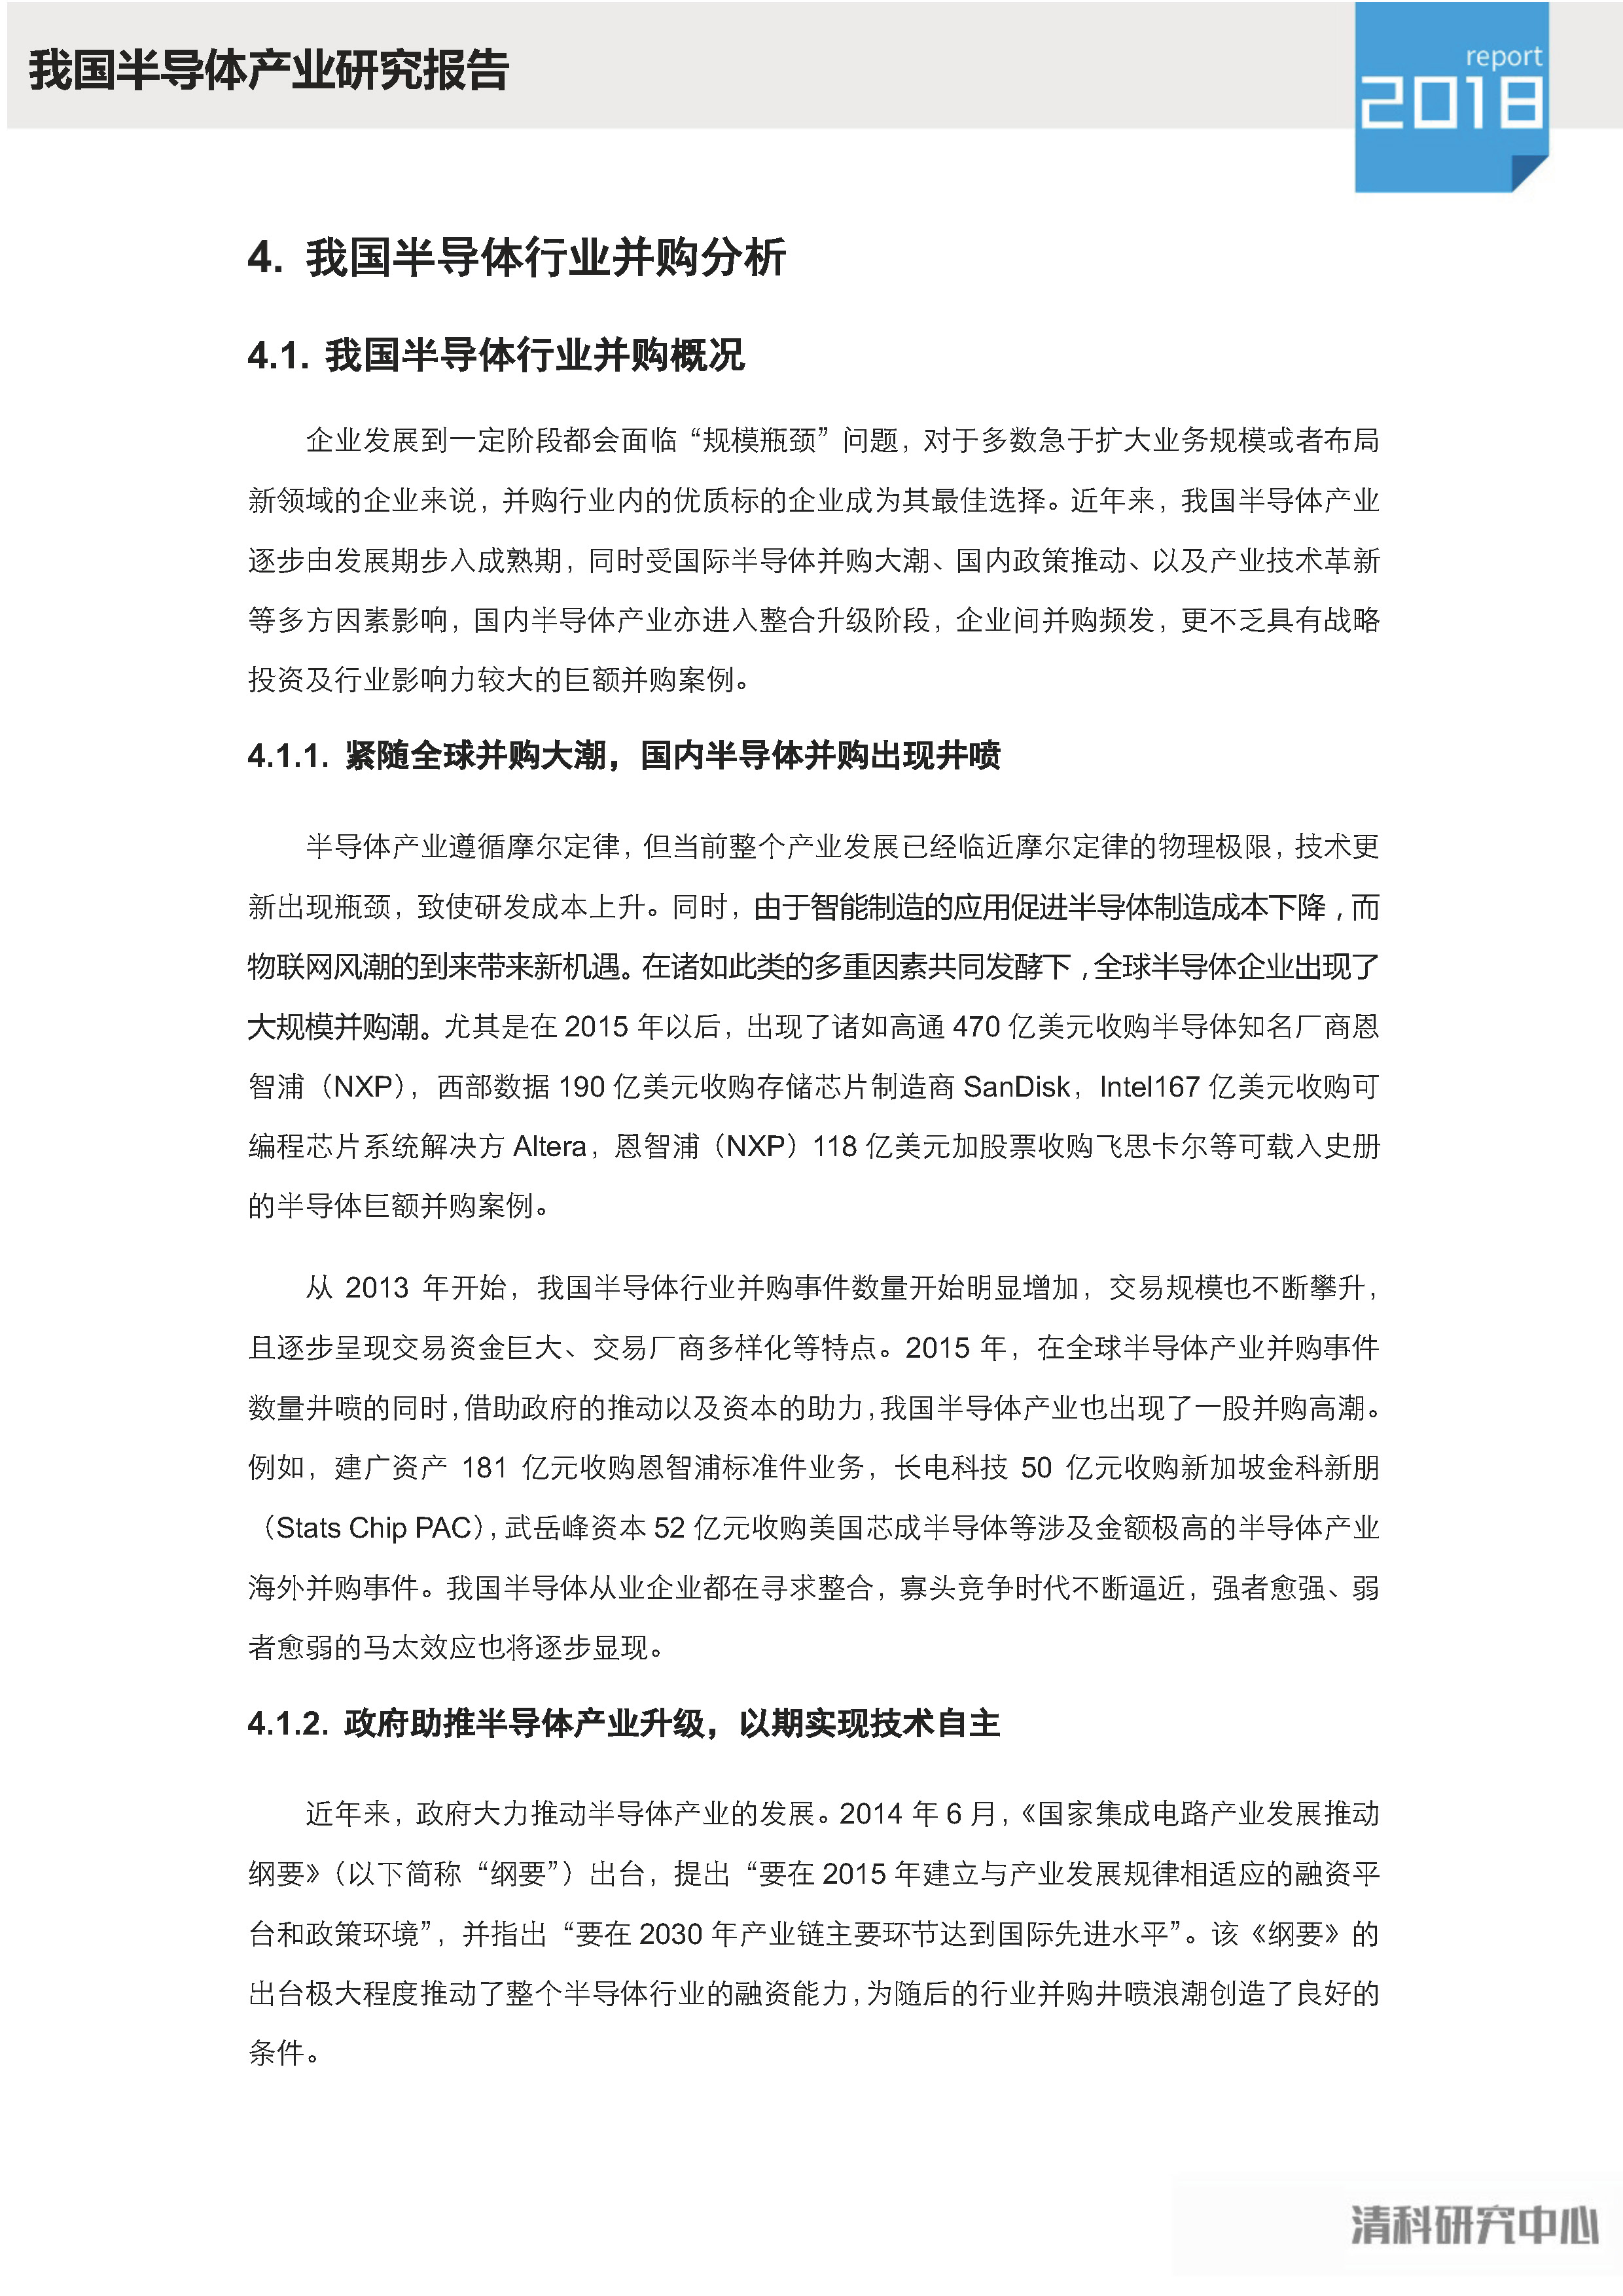 中植资本联合清科研究中心发布《中国半导体产